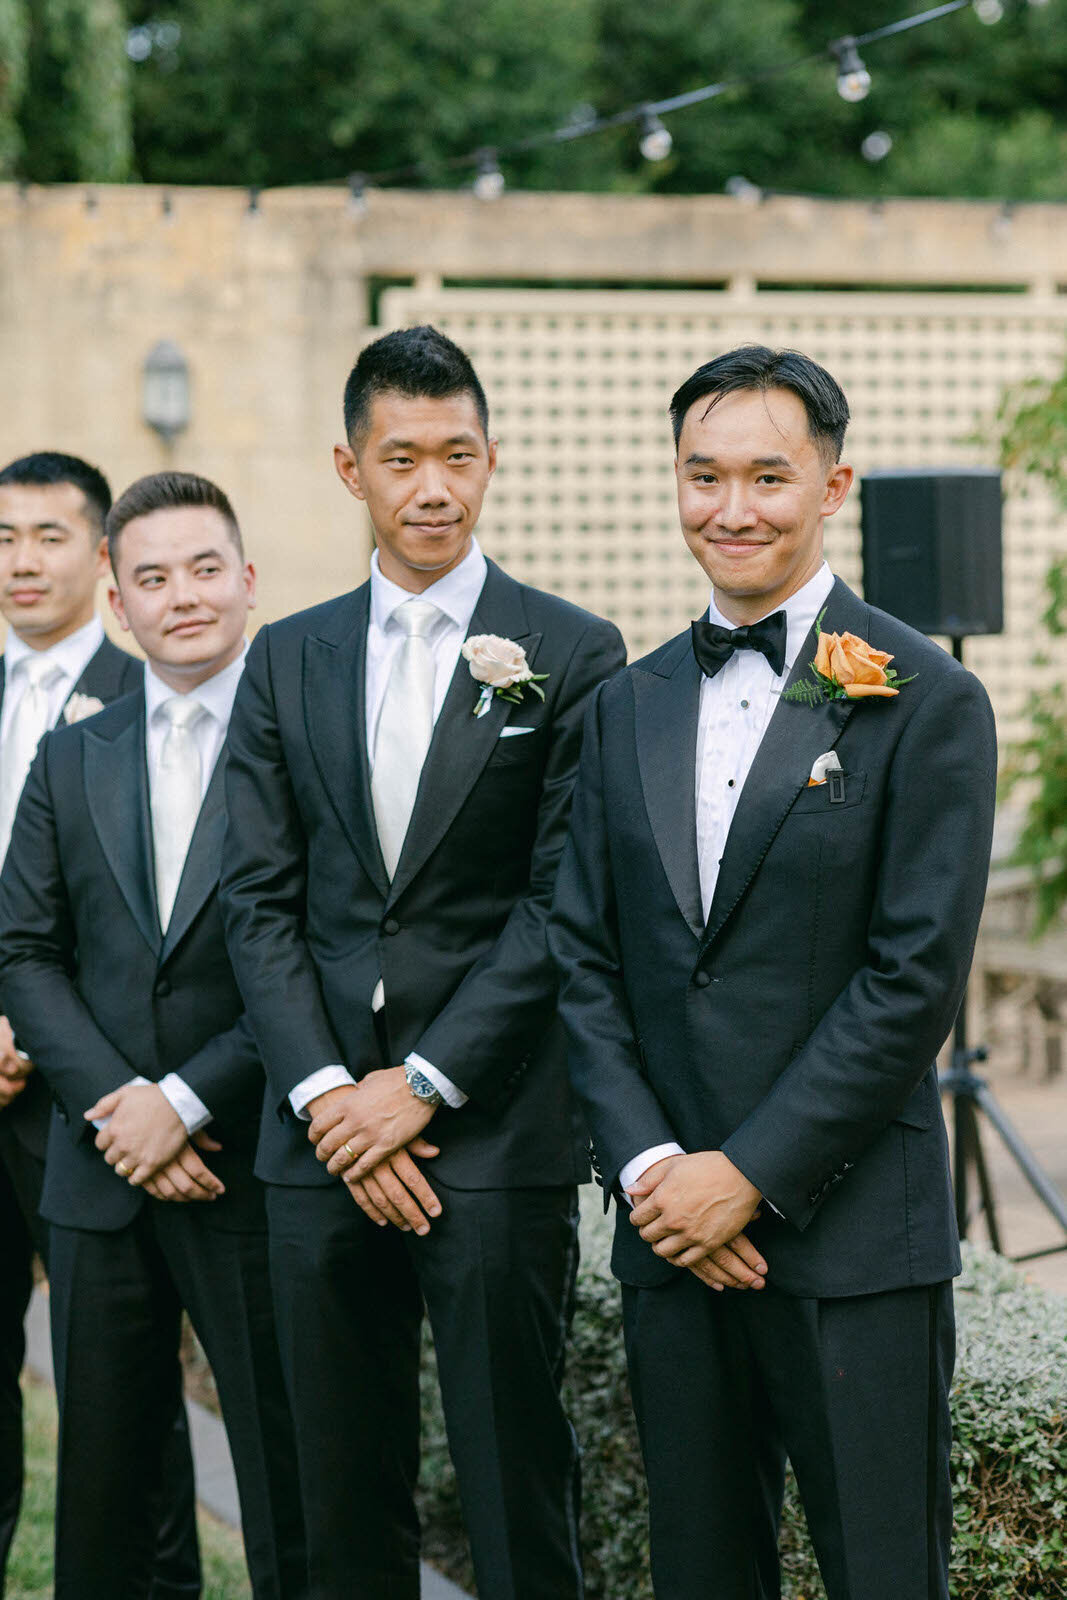 groom, groom suit and groomsmen